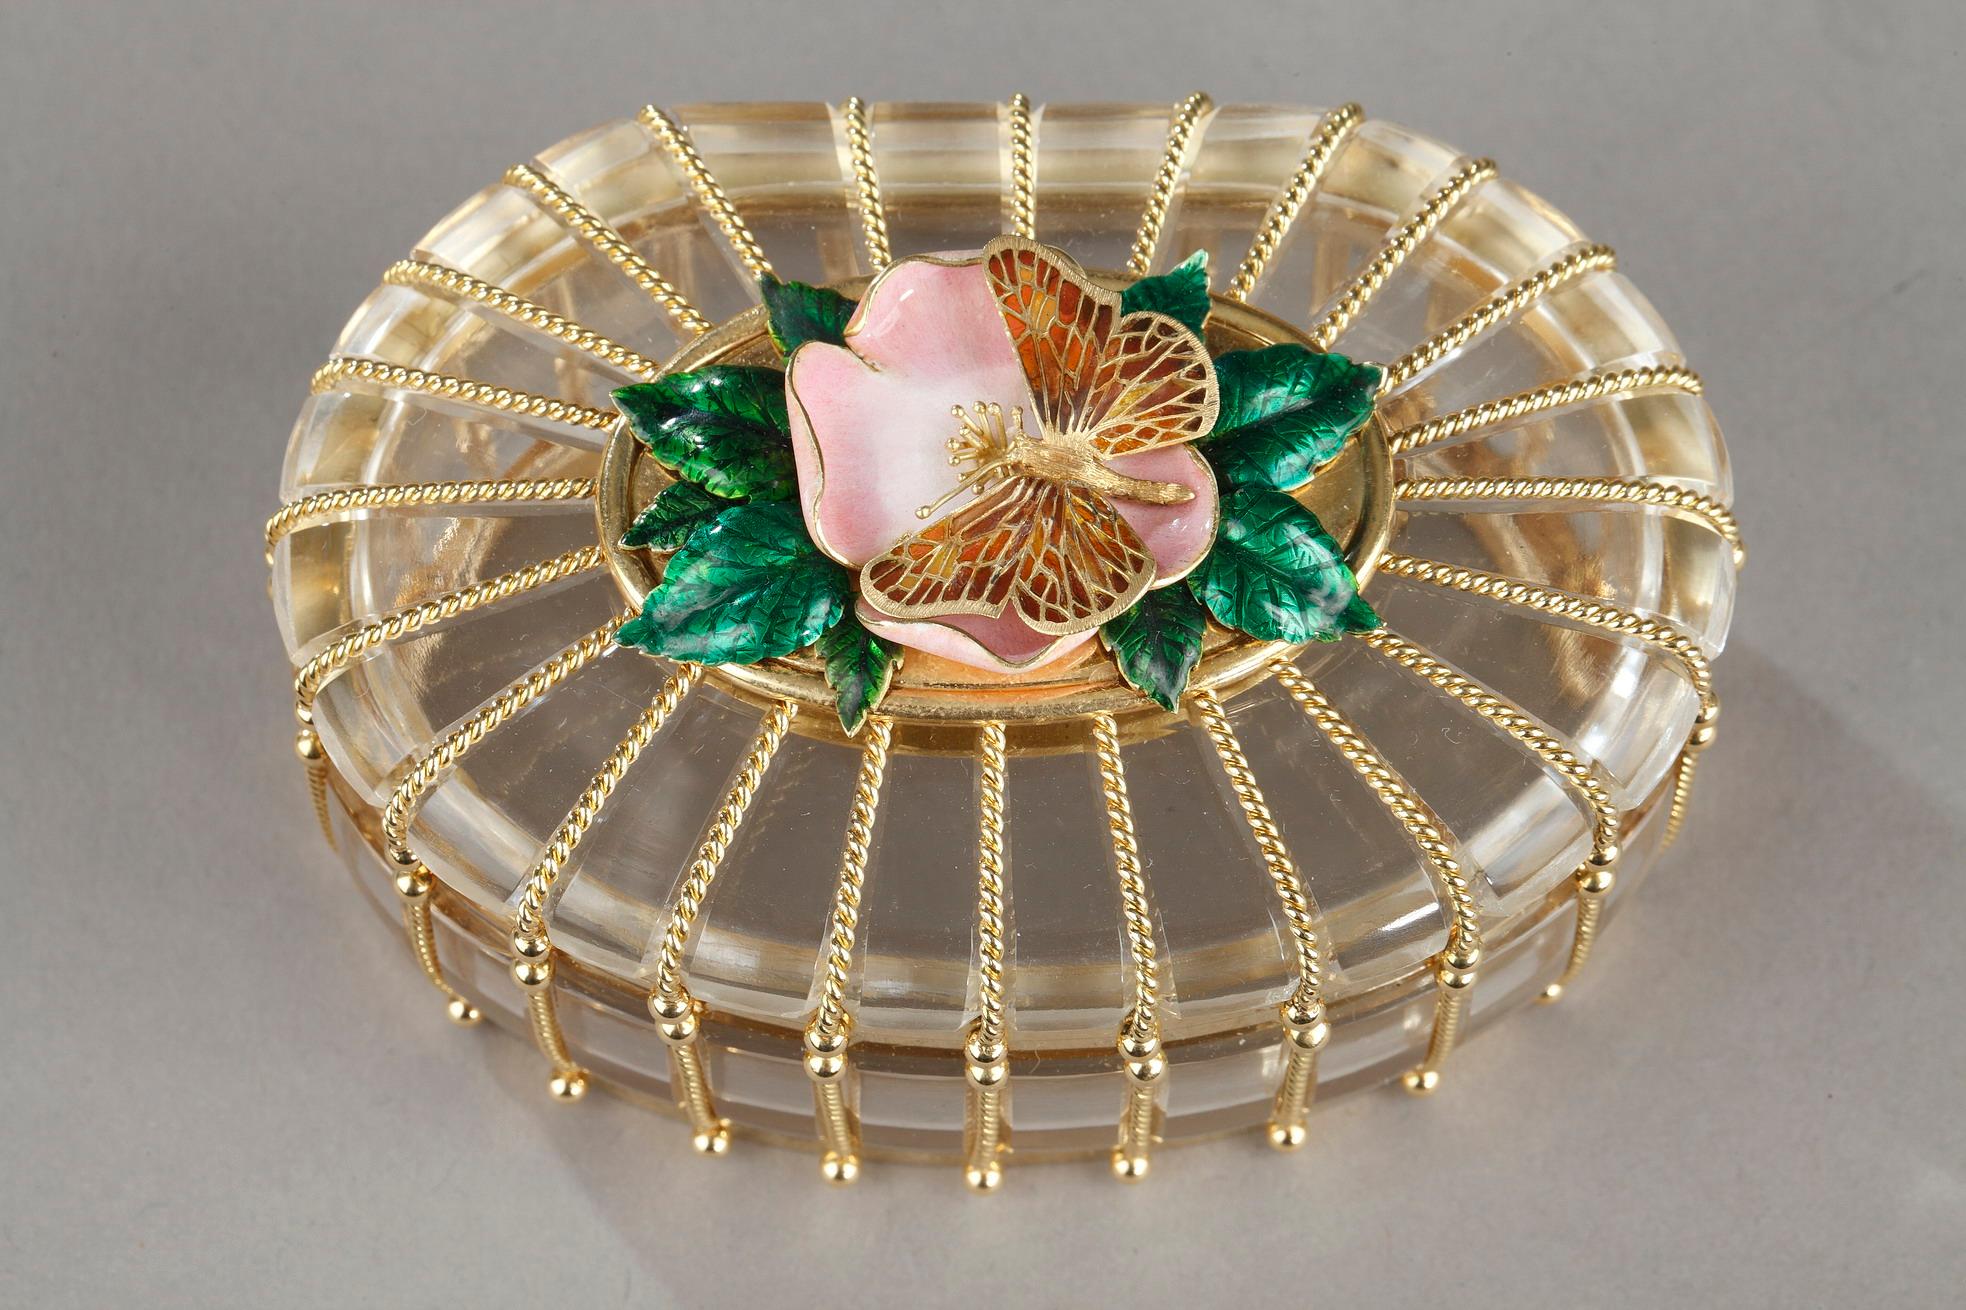 Oval, Deckel mit rosa Emailleblüte und grünen Blättern, auf denen ein goldener Schmetterling mit durchbrochenen Flügeln ruht, Halterung aus gedrehtem Seilgeflecht, Bodenrand graviert 